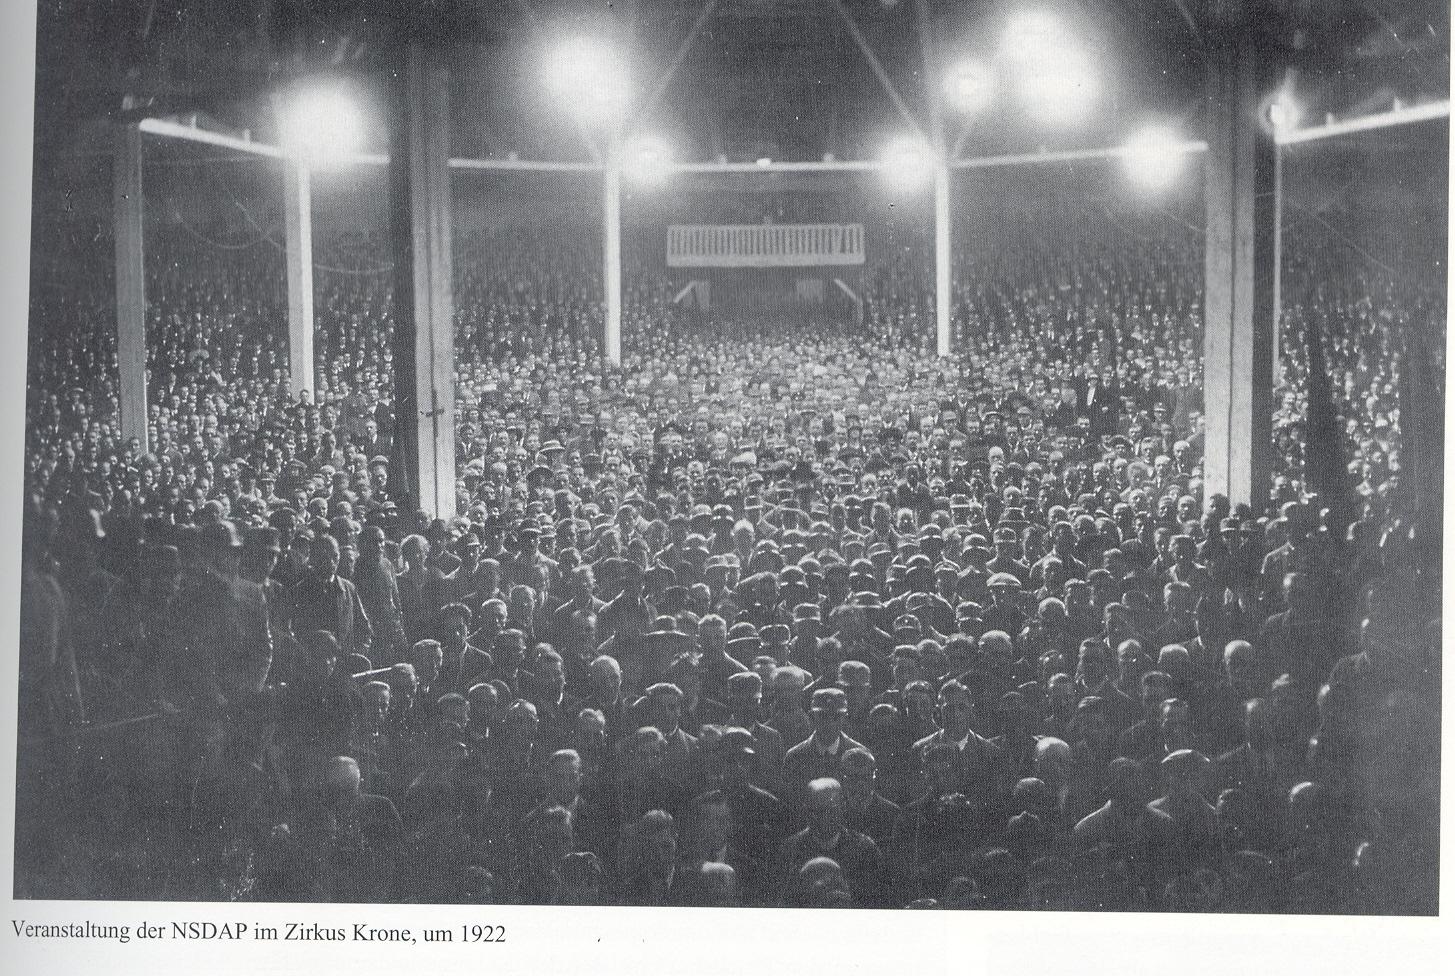 Veranstaltung der NSDAP im Zirkus Krone um 1922